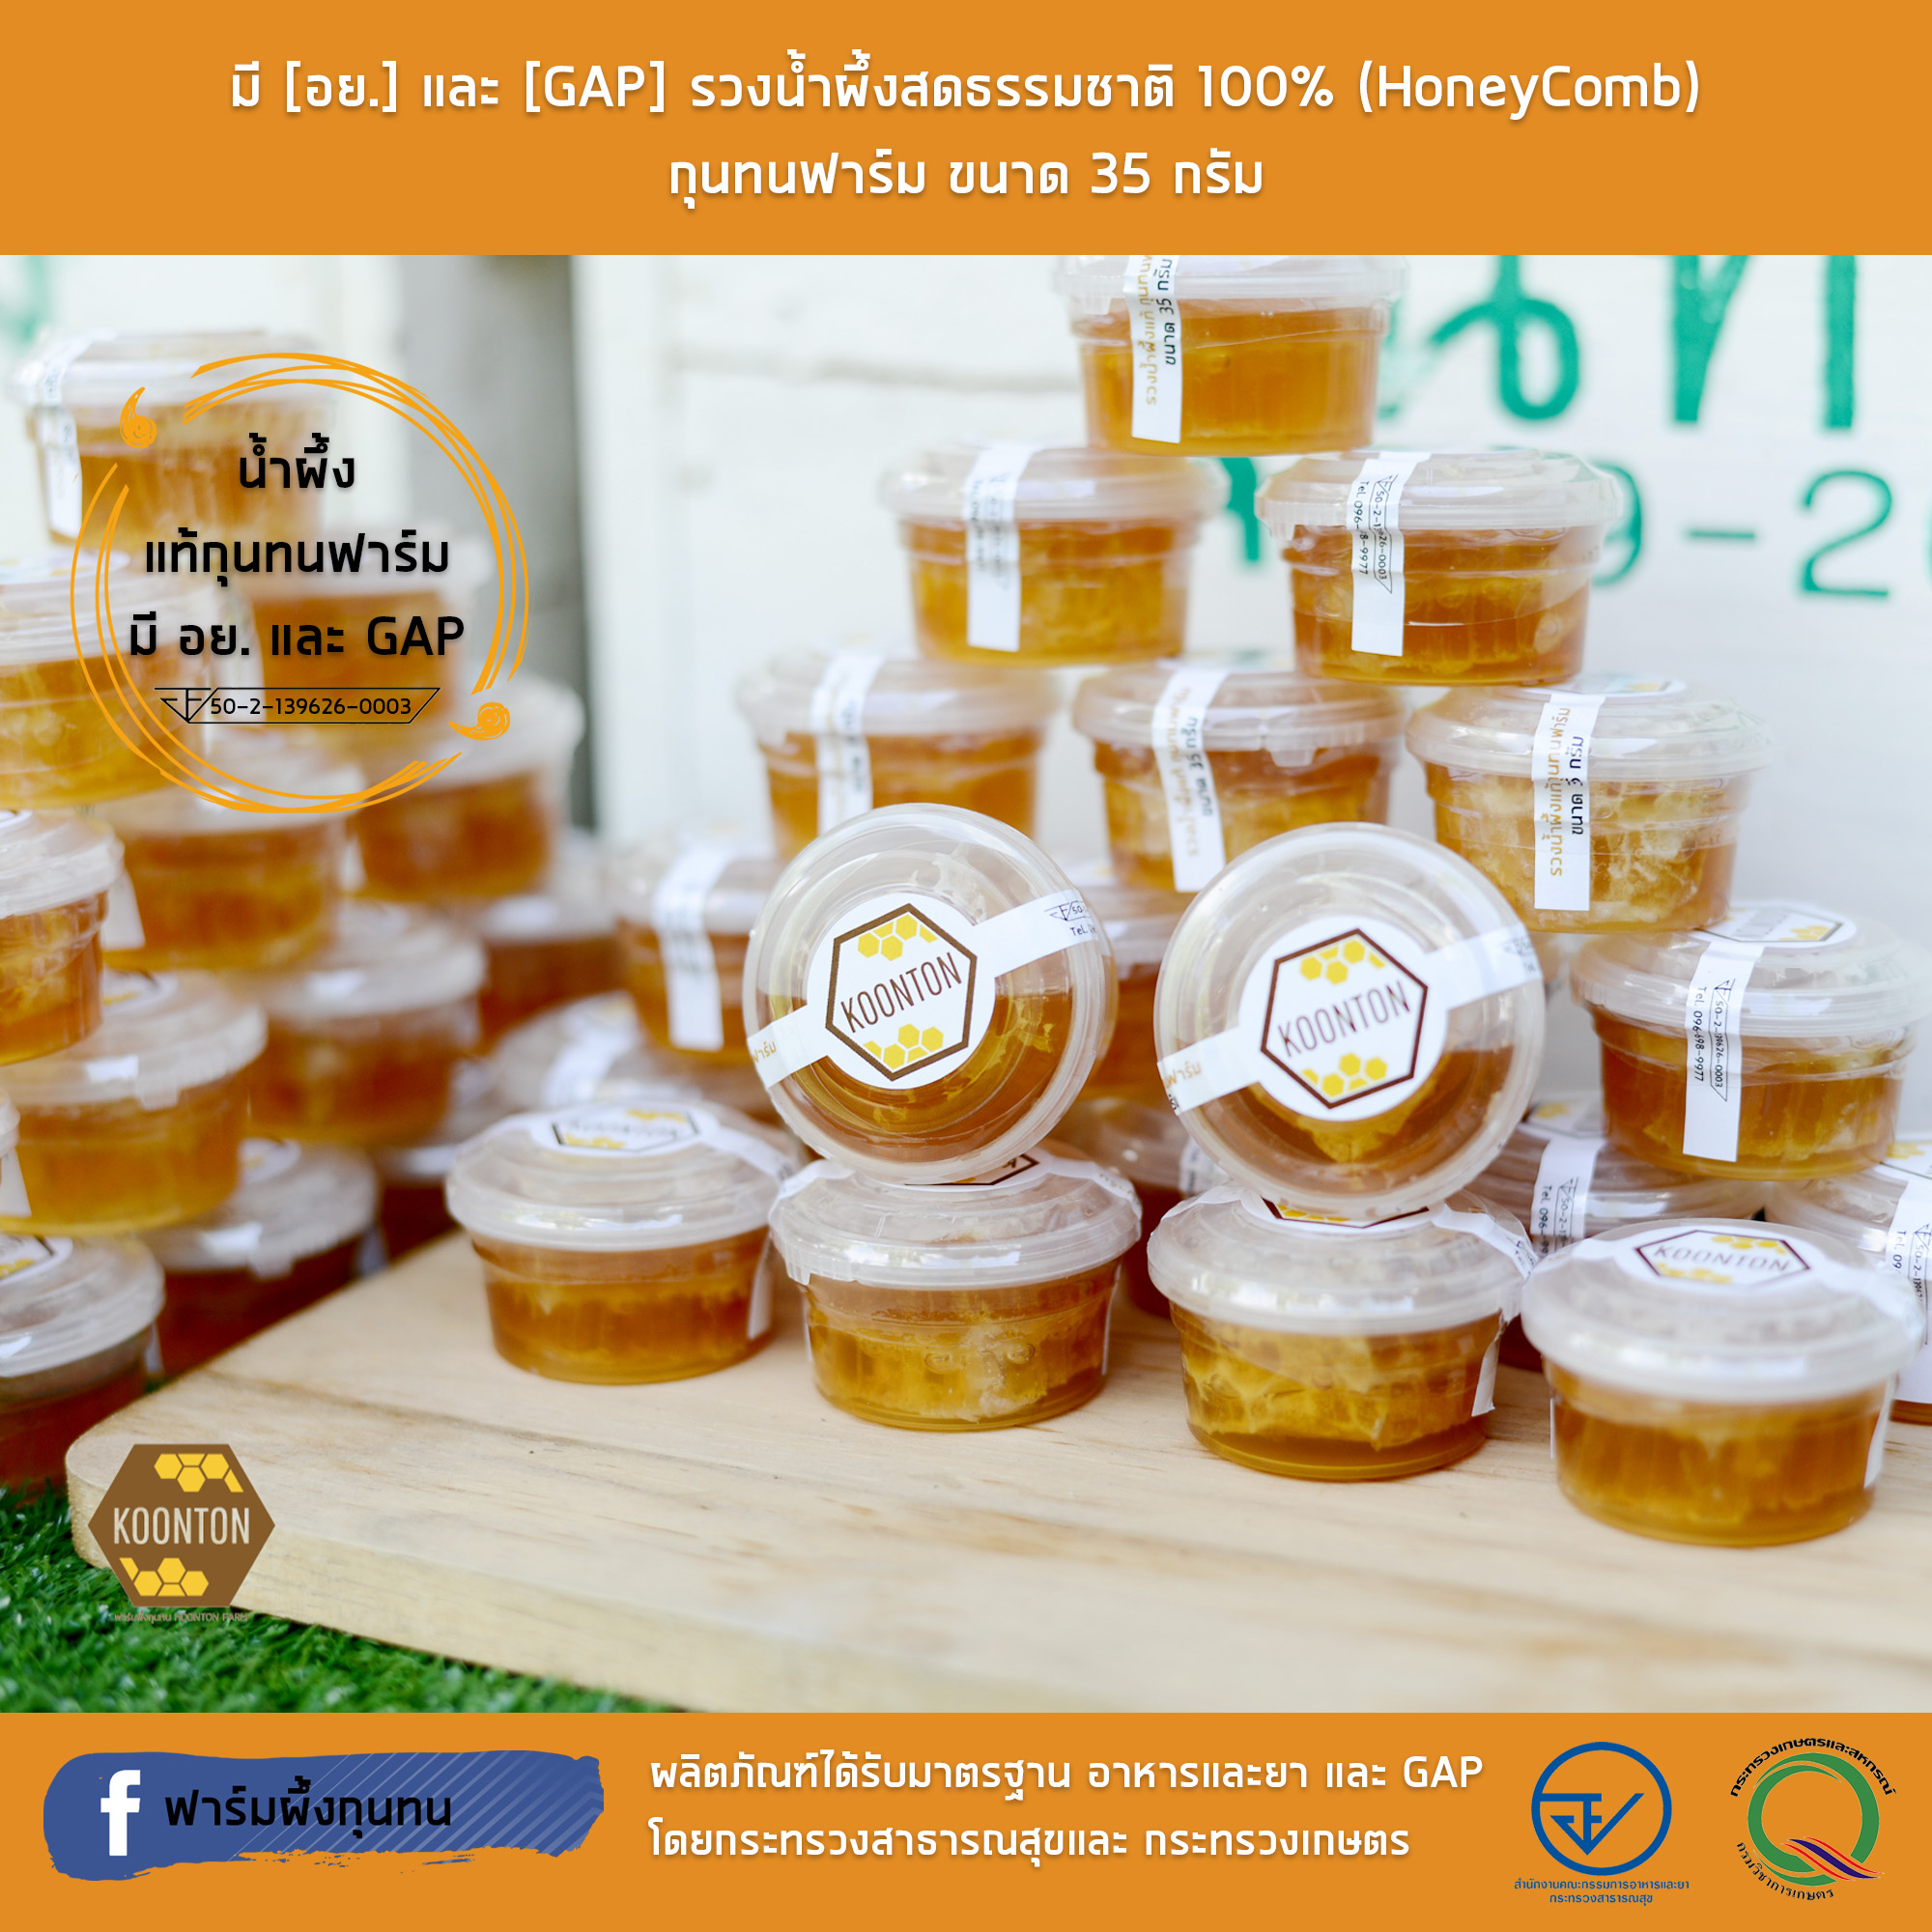 มี [อย.] และ [GAP] รวงน้ำผึ้งสดธรรมชาติ 100% (HoneyComb) กุนทนฟาร์ม ขนาด 35 กรัม